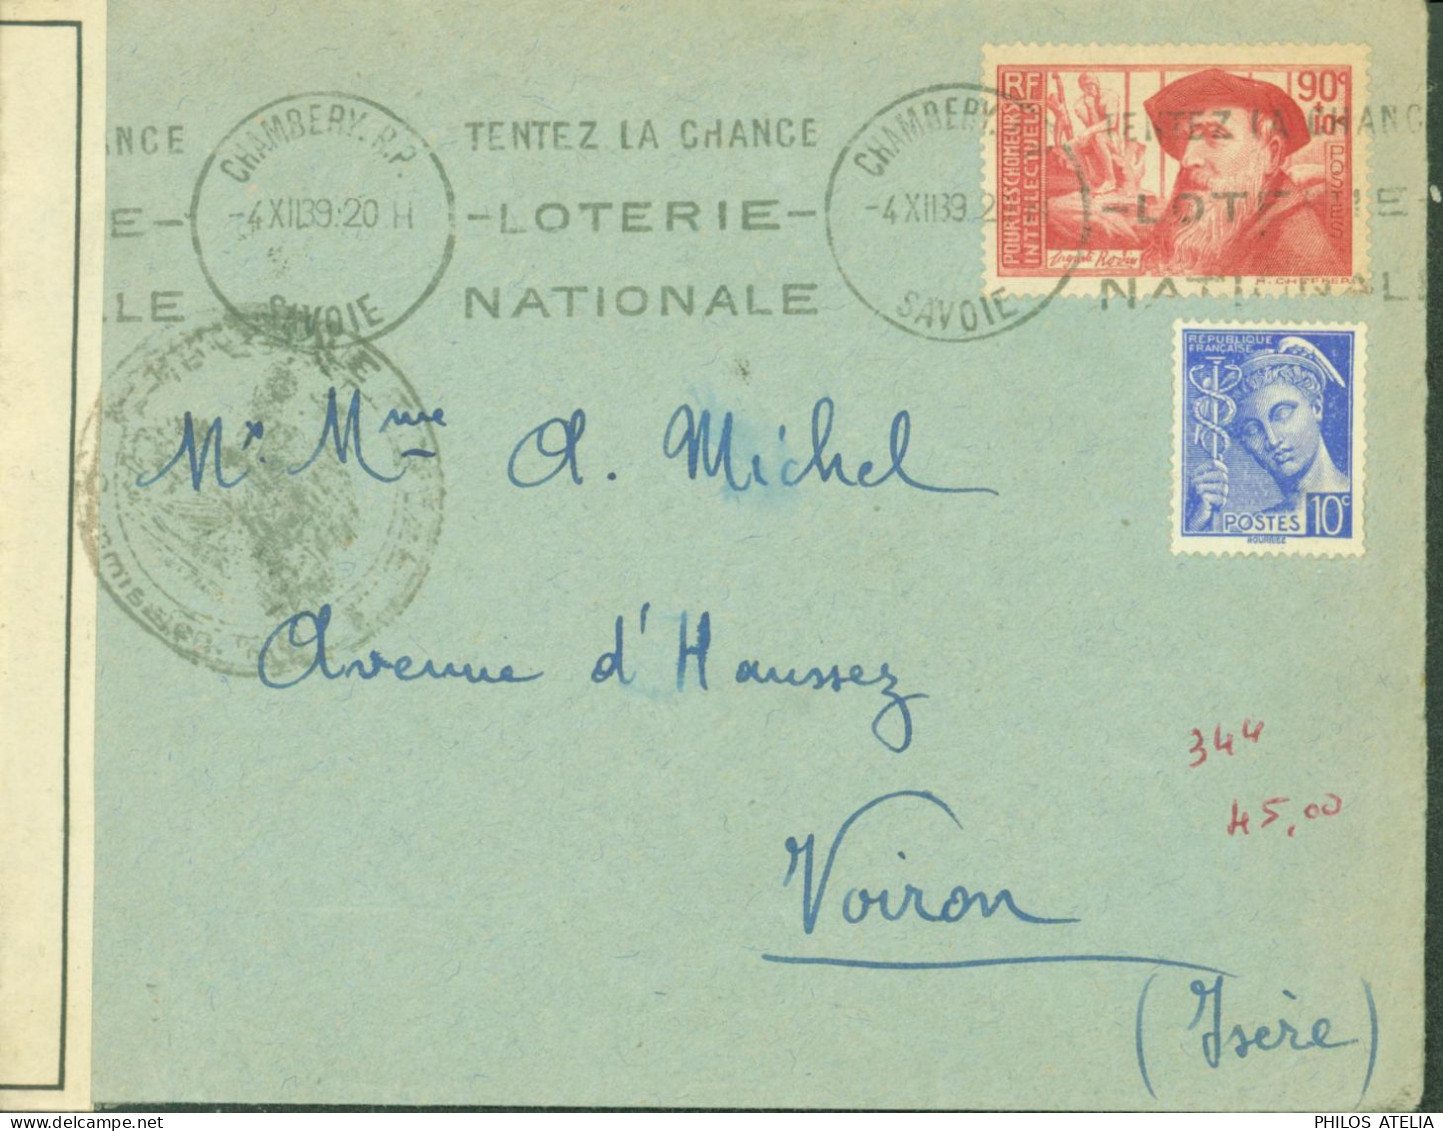 Guerre 40 YT N°344 Rodin + Mercure N+407 CAD Chambéry RP Savoie 4 XII 39 Censure Bande + Cachet NB195 Grenoble - Guerre De 1939-45